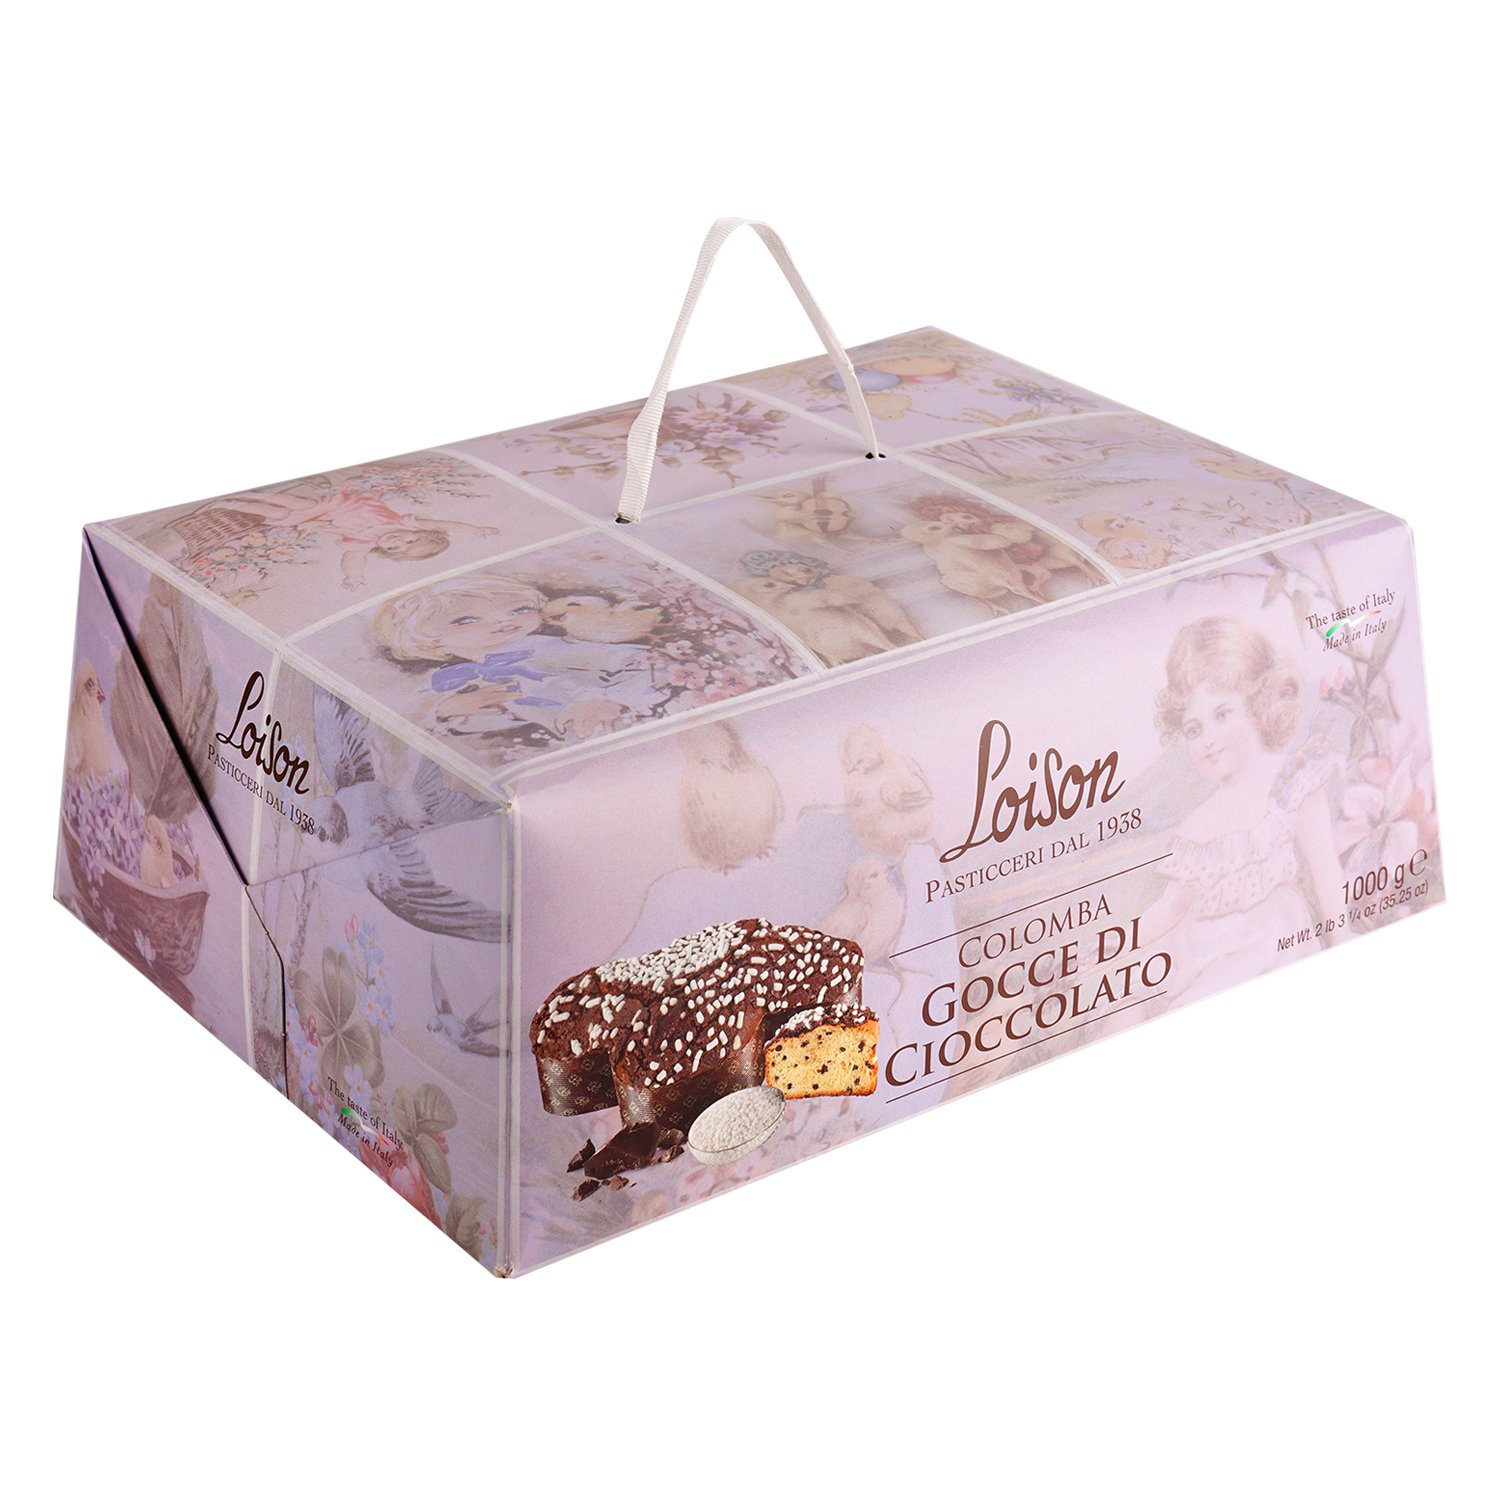 Коломба Loison La colomba Gocce Di Cioccolato з шоколадними краплями 1 кг (892424) - фото 1